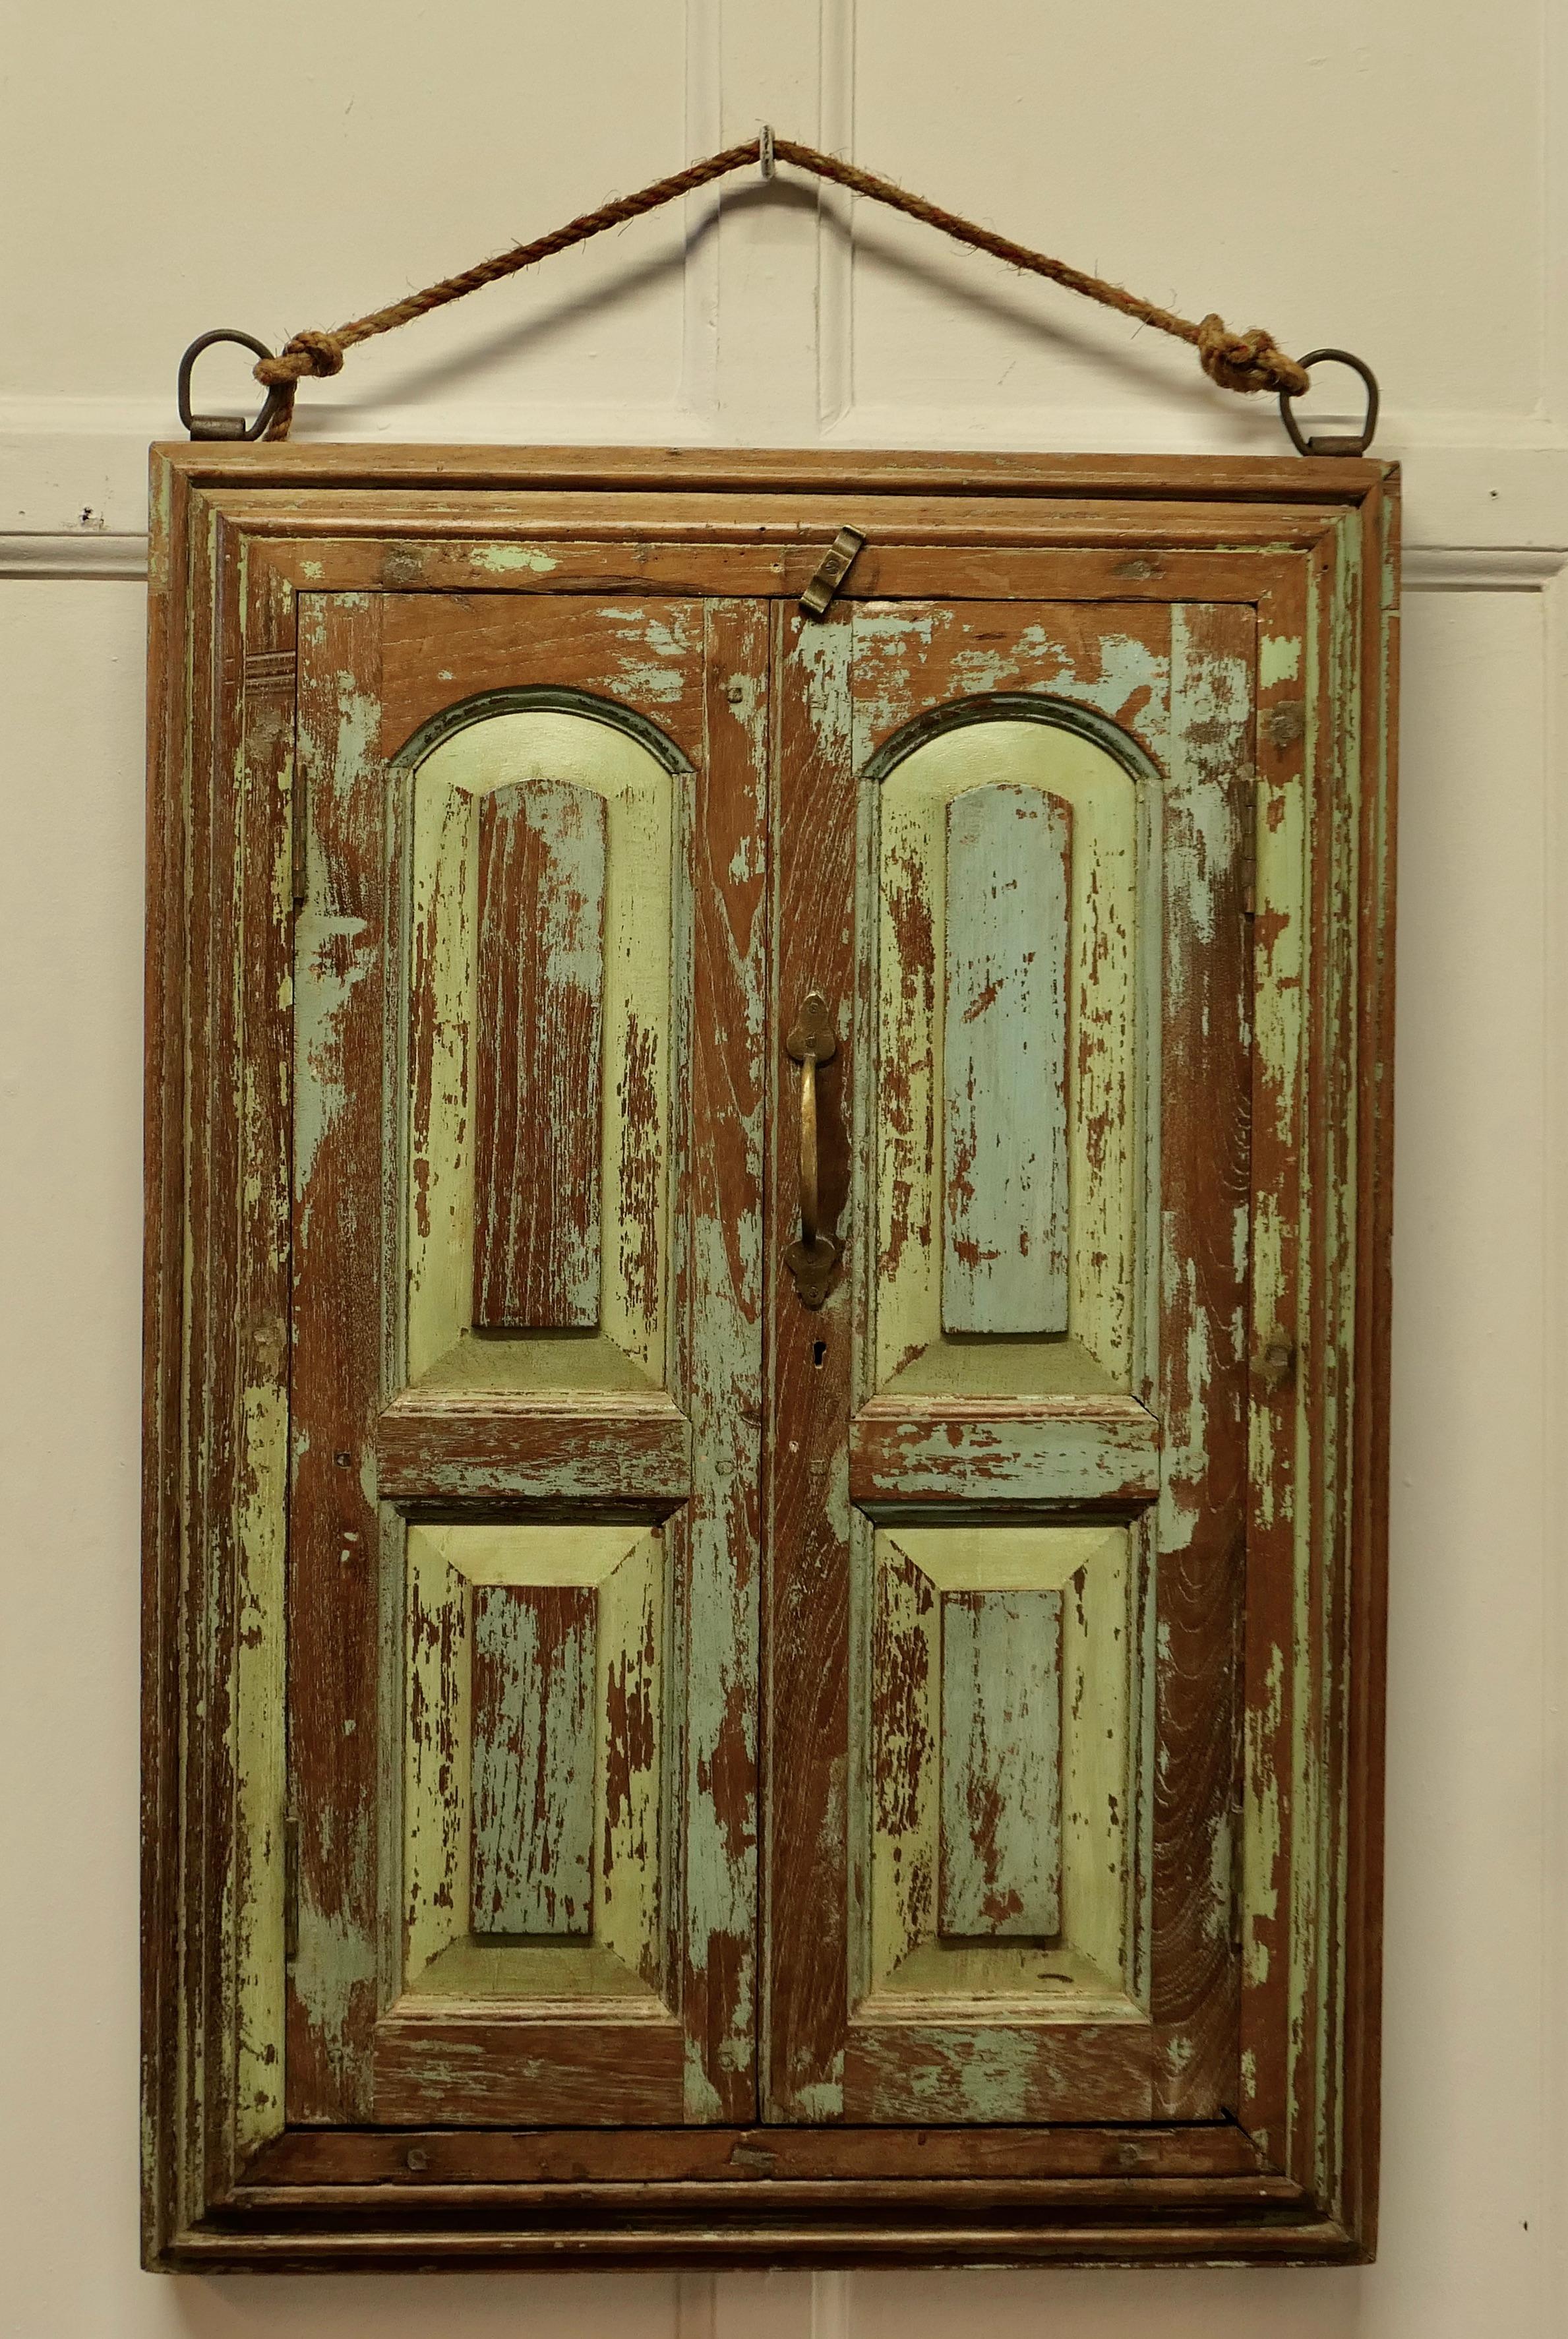 Wandspiegel, verdeckt mit schwerem Eichenholz-Türrahmen/Schubladen

Dieser sehr attraktive getäfelte Eichenholz-Doppeltürrahmen verbirgt einen Spiegel
Die beiden Türen haben noch ihre originalen Metallscharniere und den hölzernen Schließer. Sie